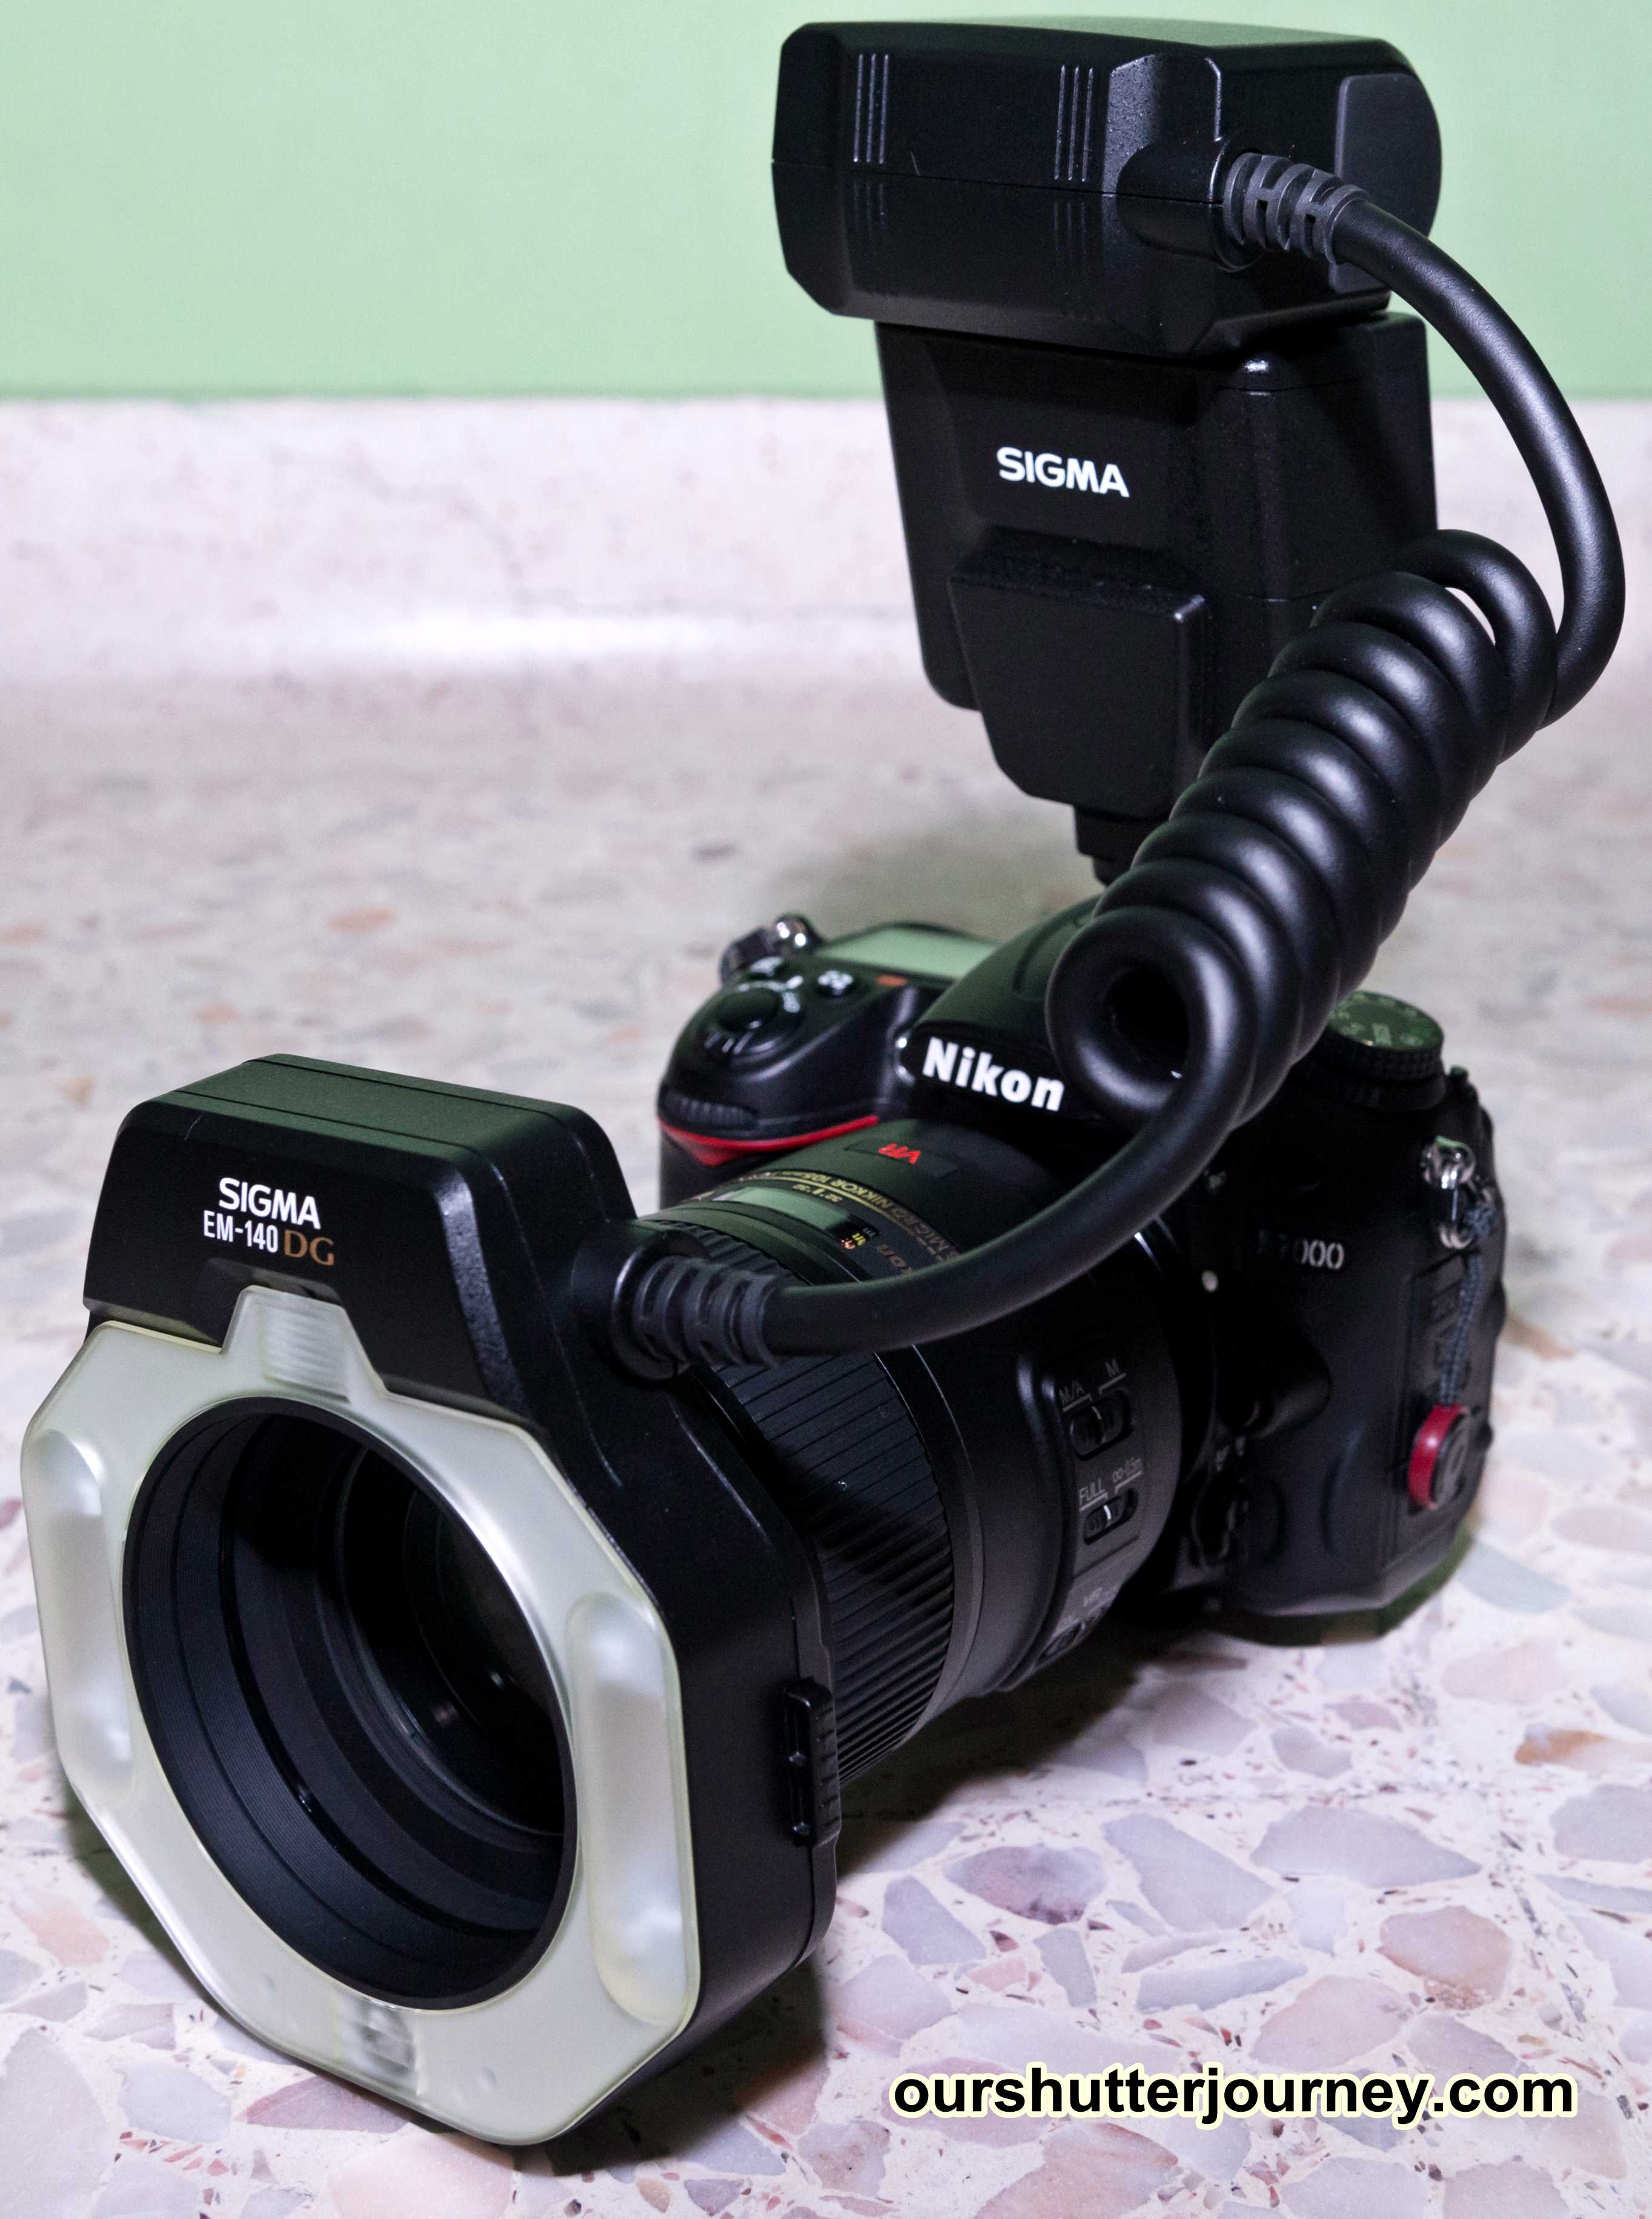 Фотовспышка Sigma EM 140 DG Macro for Canon - подробные характеристики обзоры видео фото Цены в интернет-магазинах где можно купить фотовспышку Sigma EM 140 DG Macro for Canon